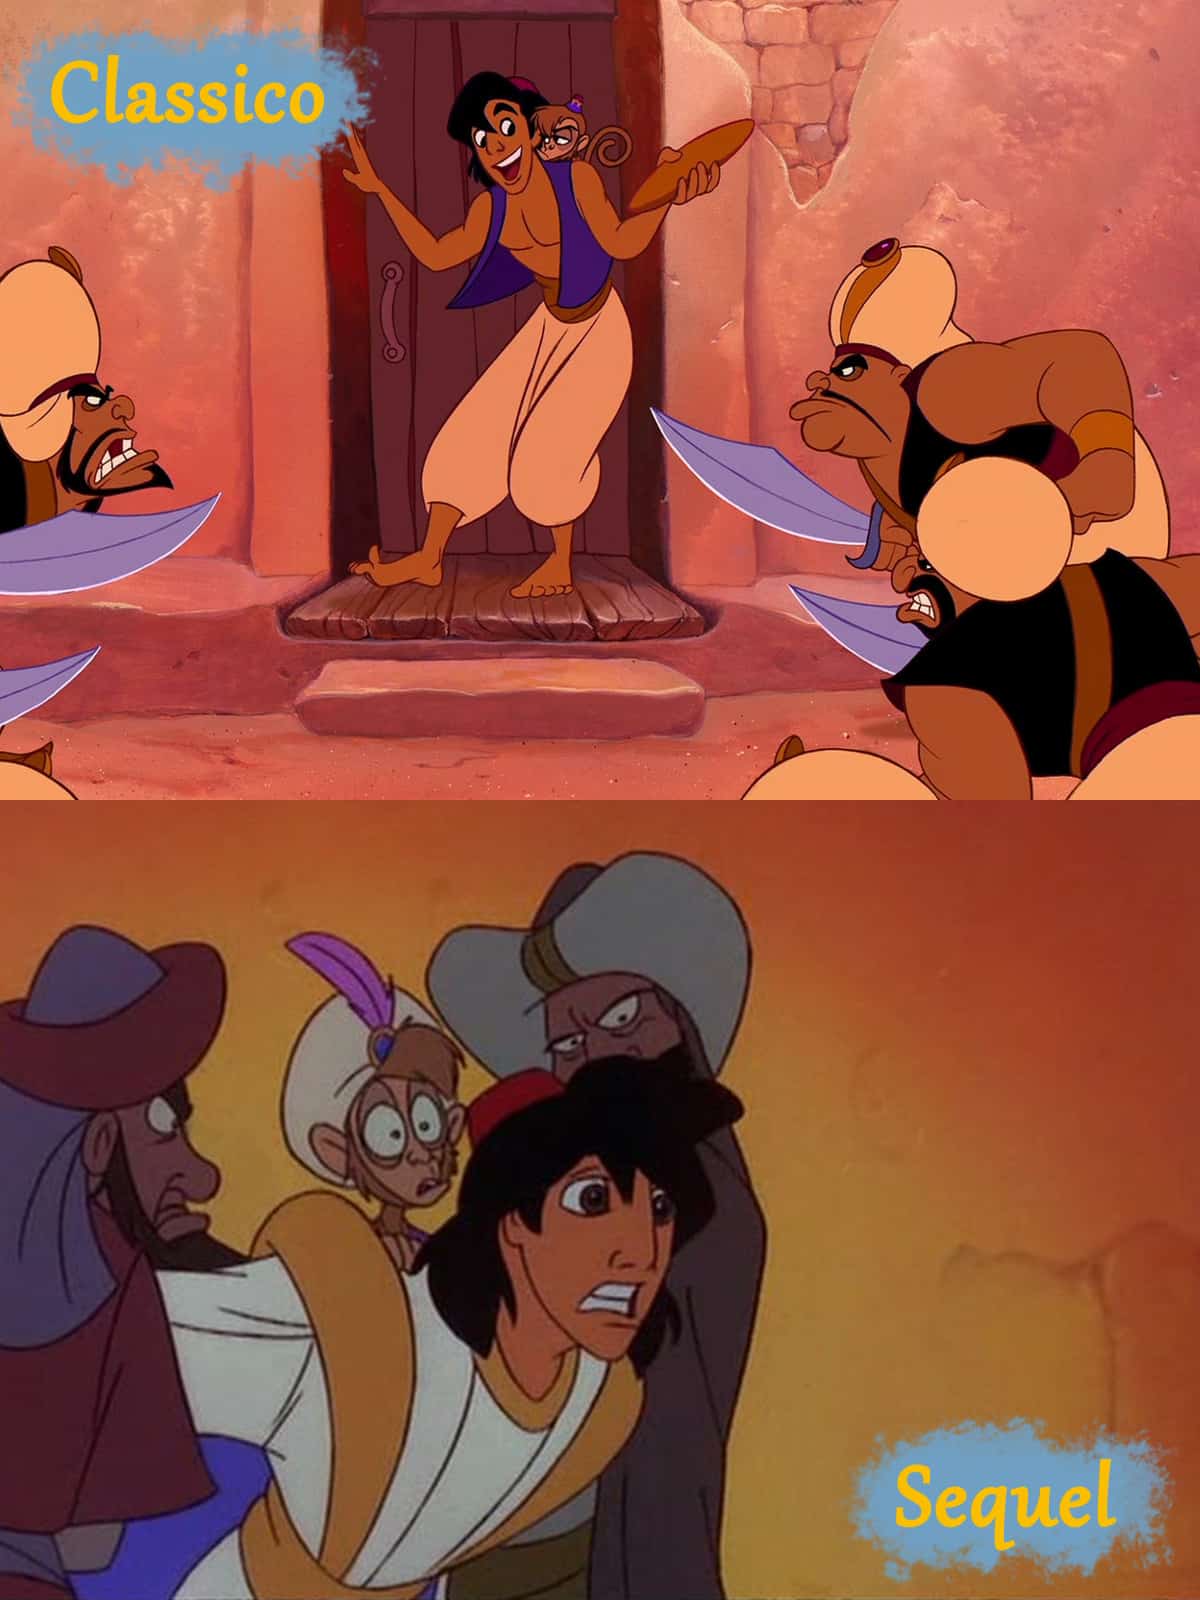 Immagini a confronto tra il classico di Aladdin e un sequel.